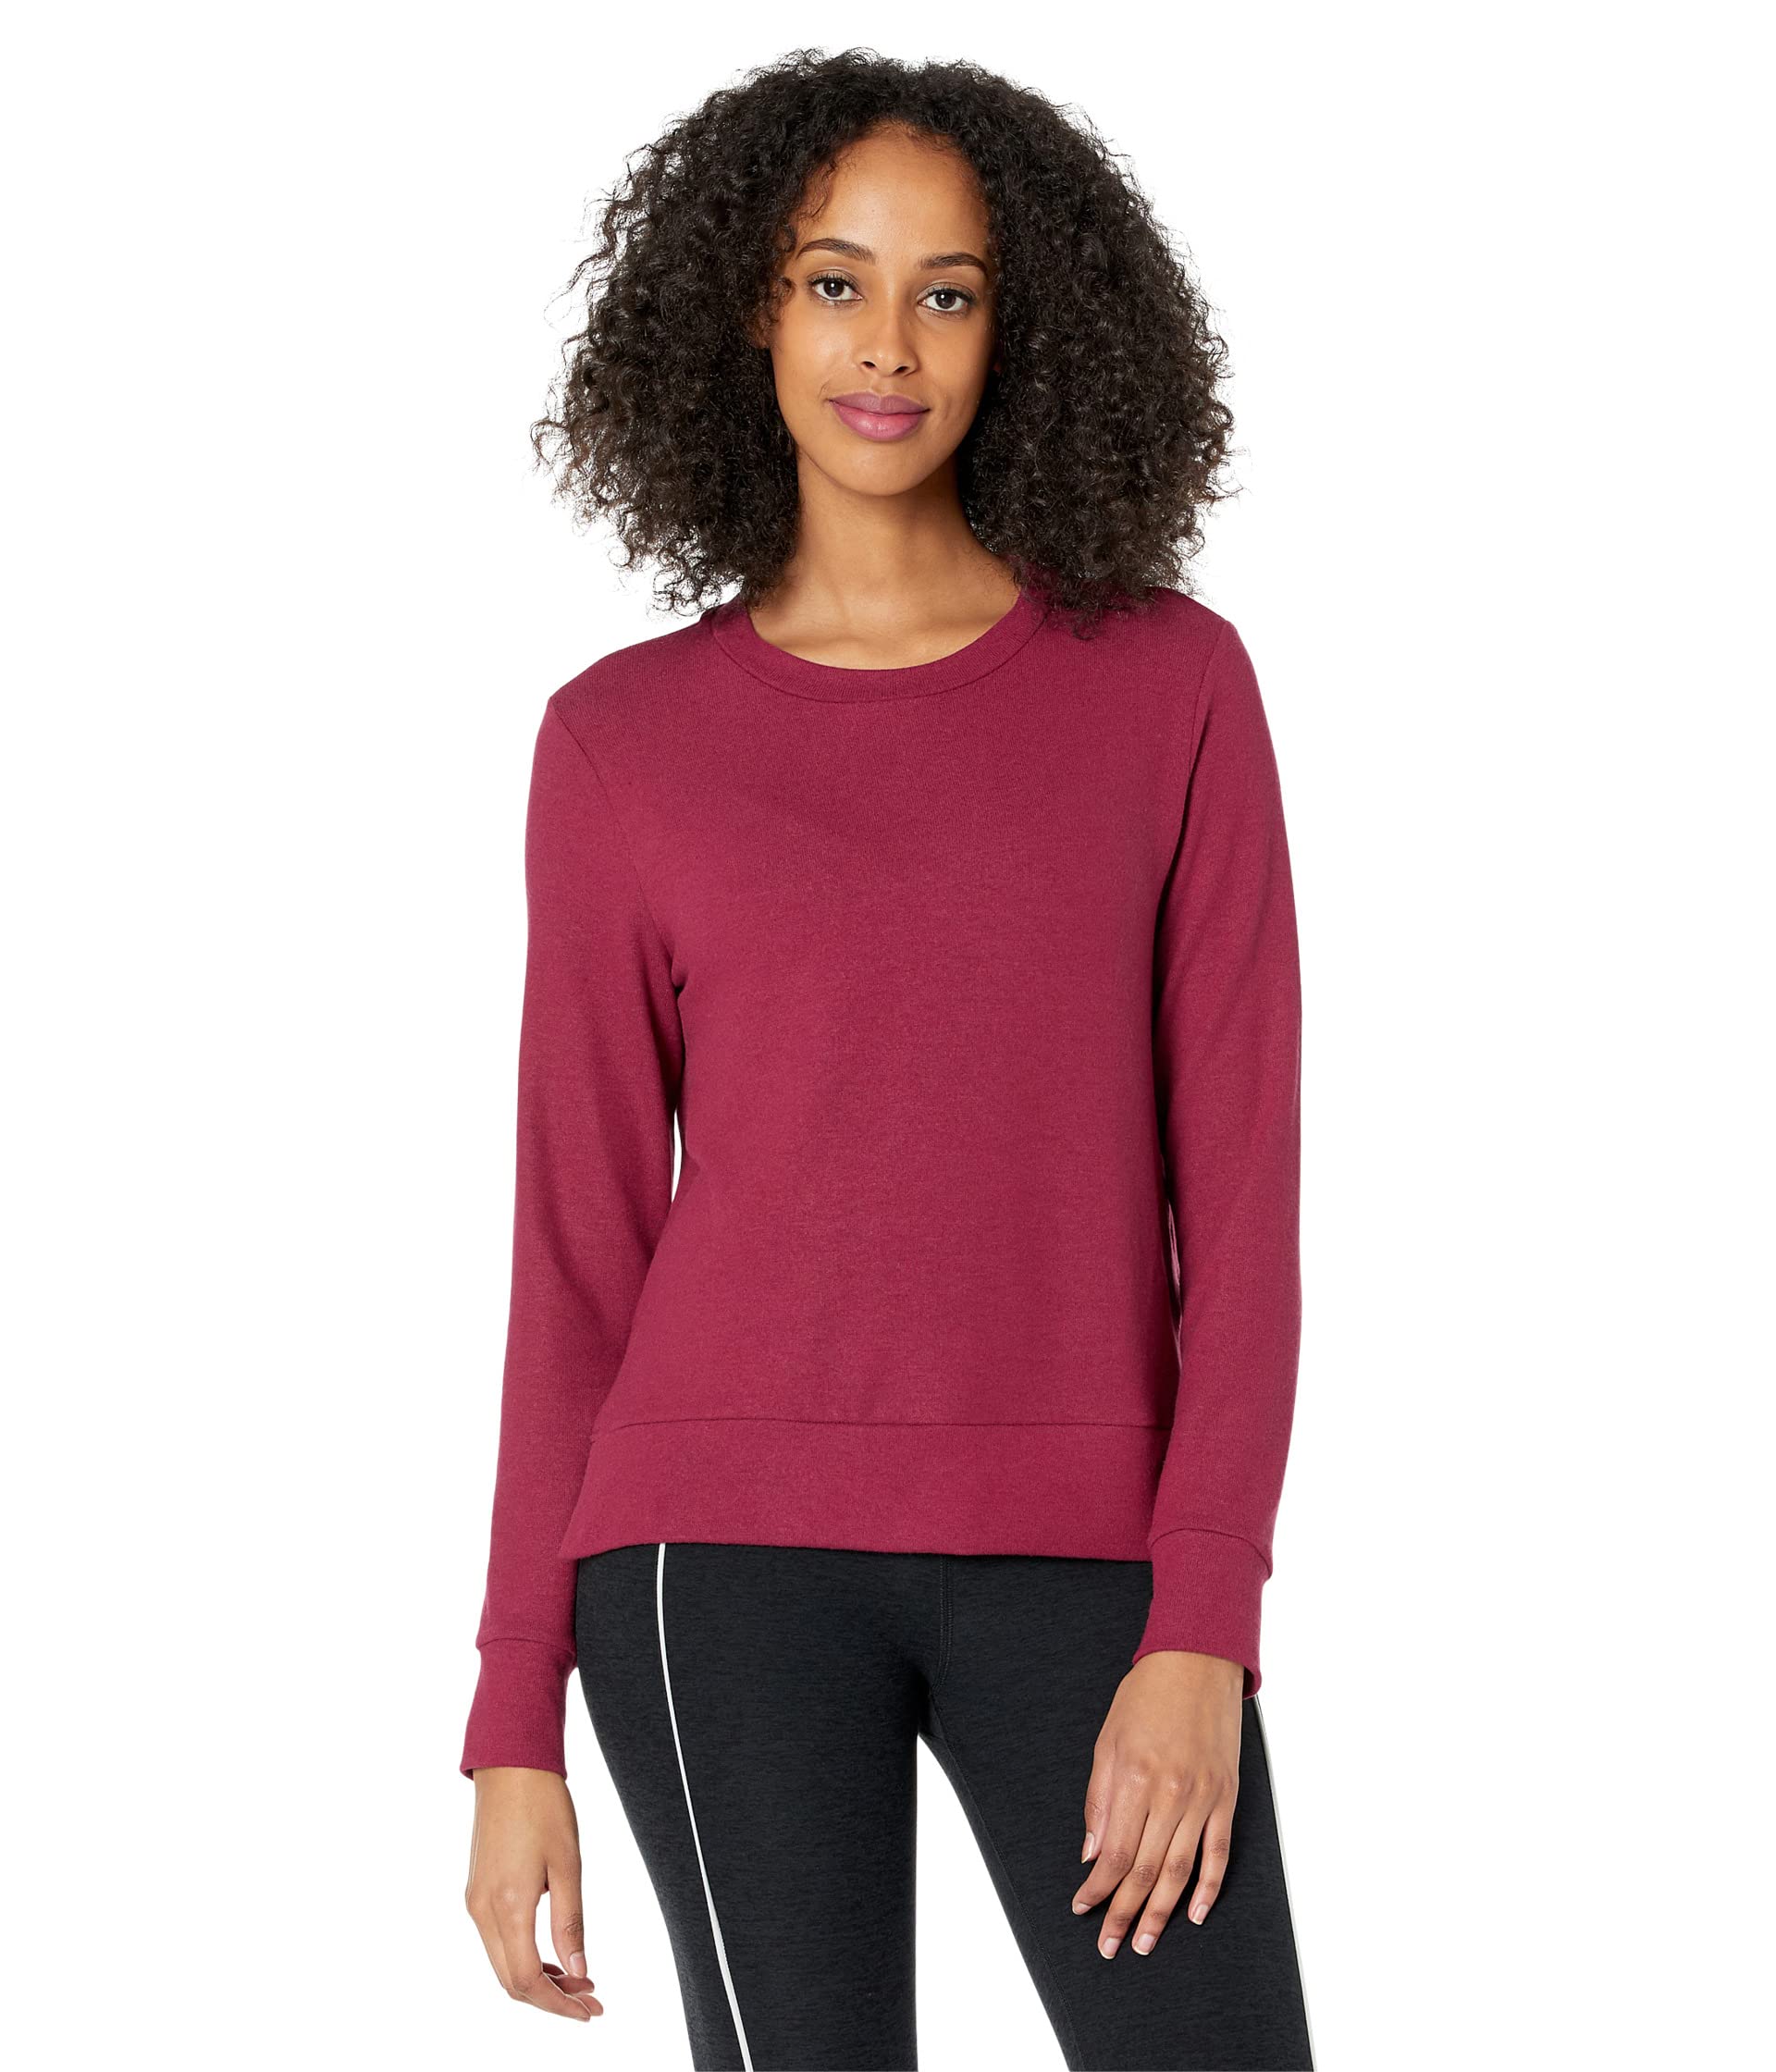 Пуловер Beyond Yoga, Side Slit Long Sleeve Pullover пуловер beyond yoga side slit long sleeve pullover цвет garnet red